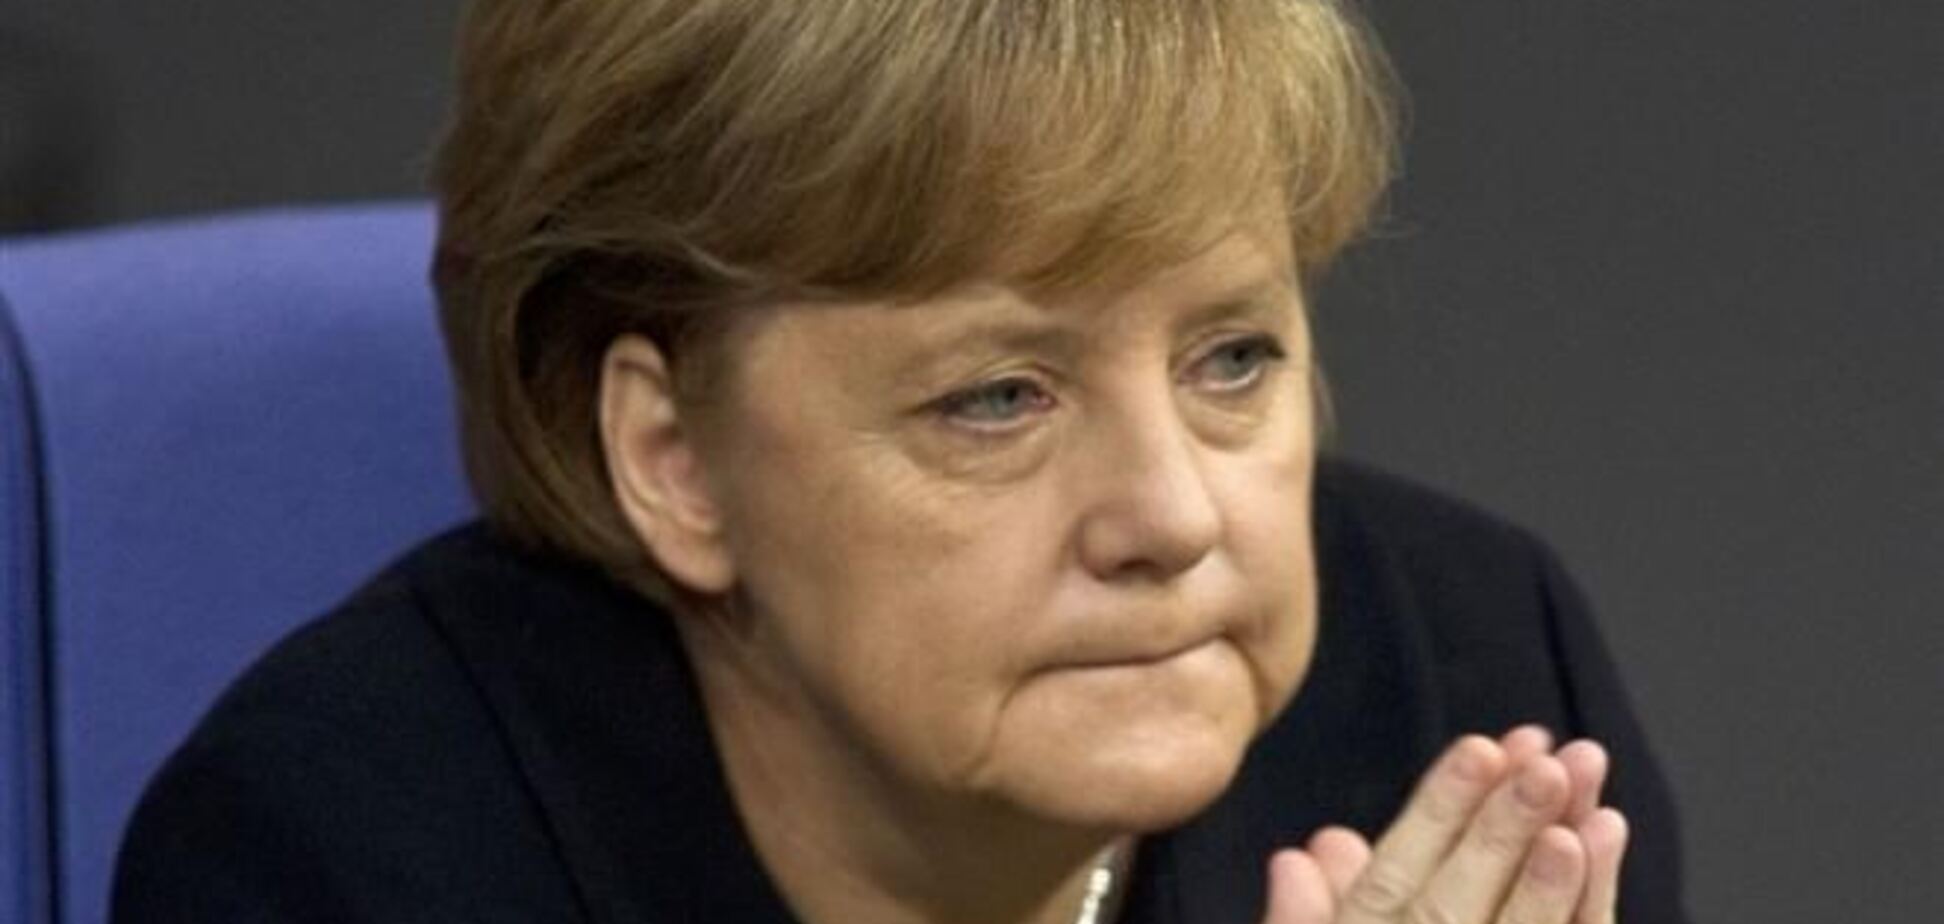 Германия и ЕС приложат все усилия для выхода из кризиса в Украине - Меркель